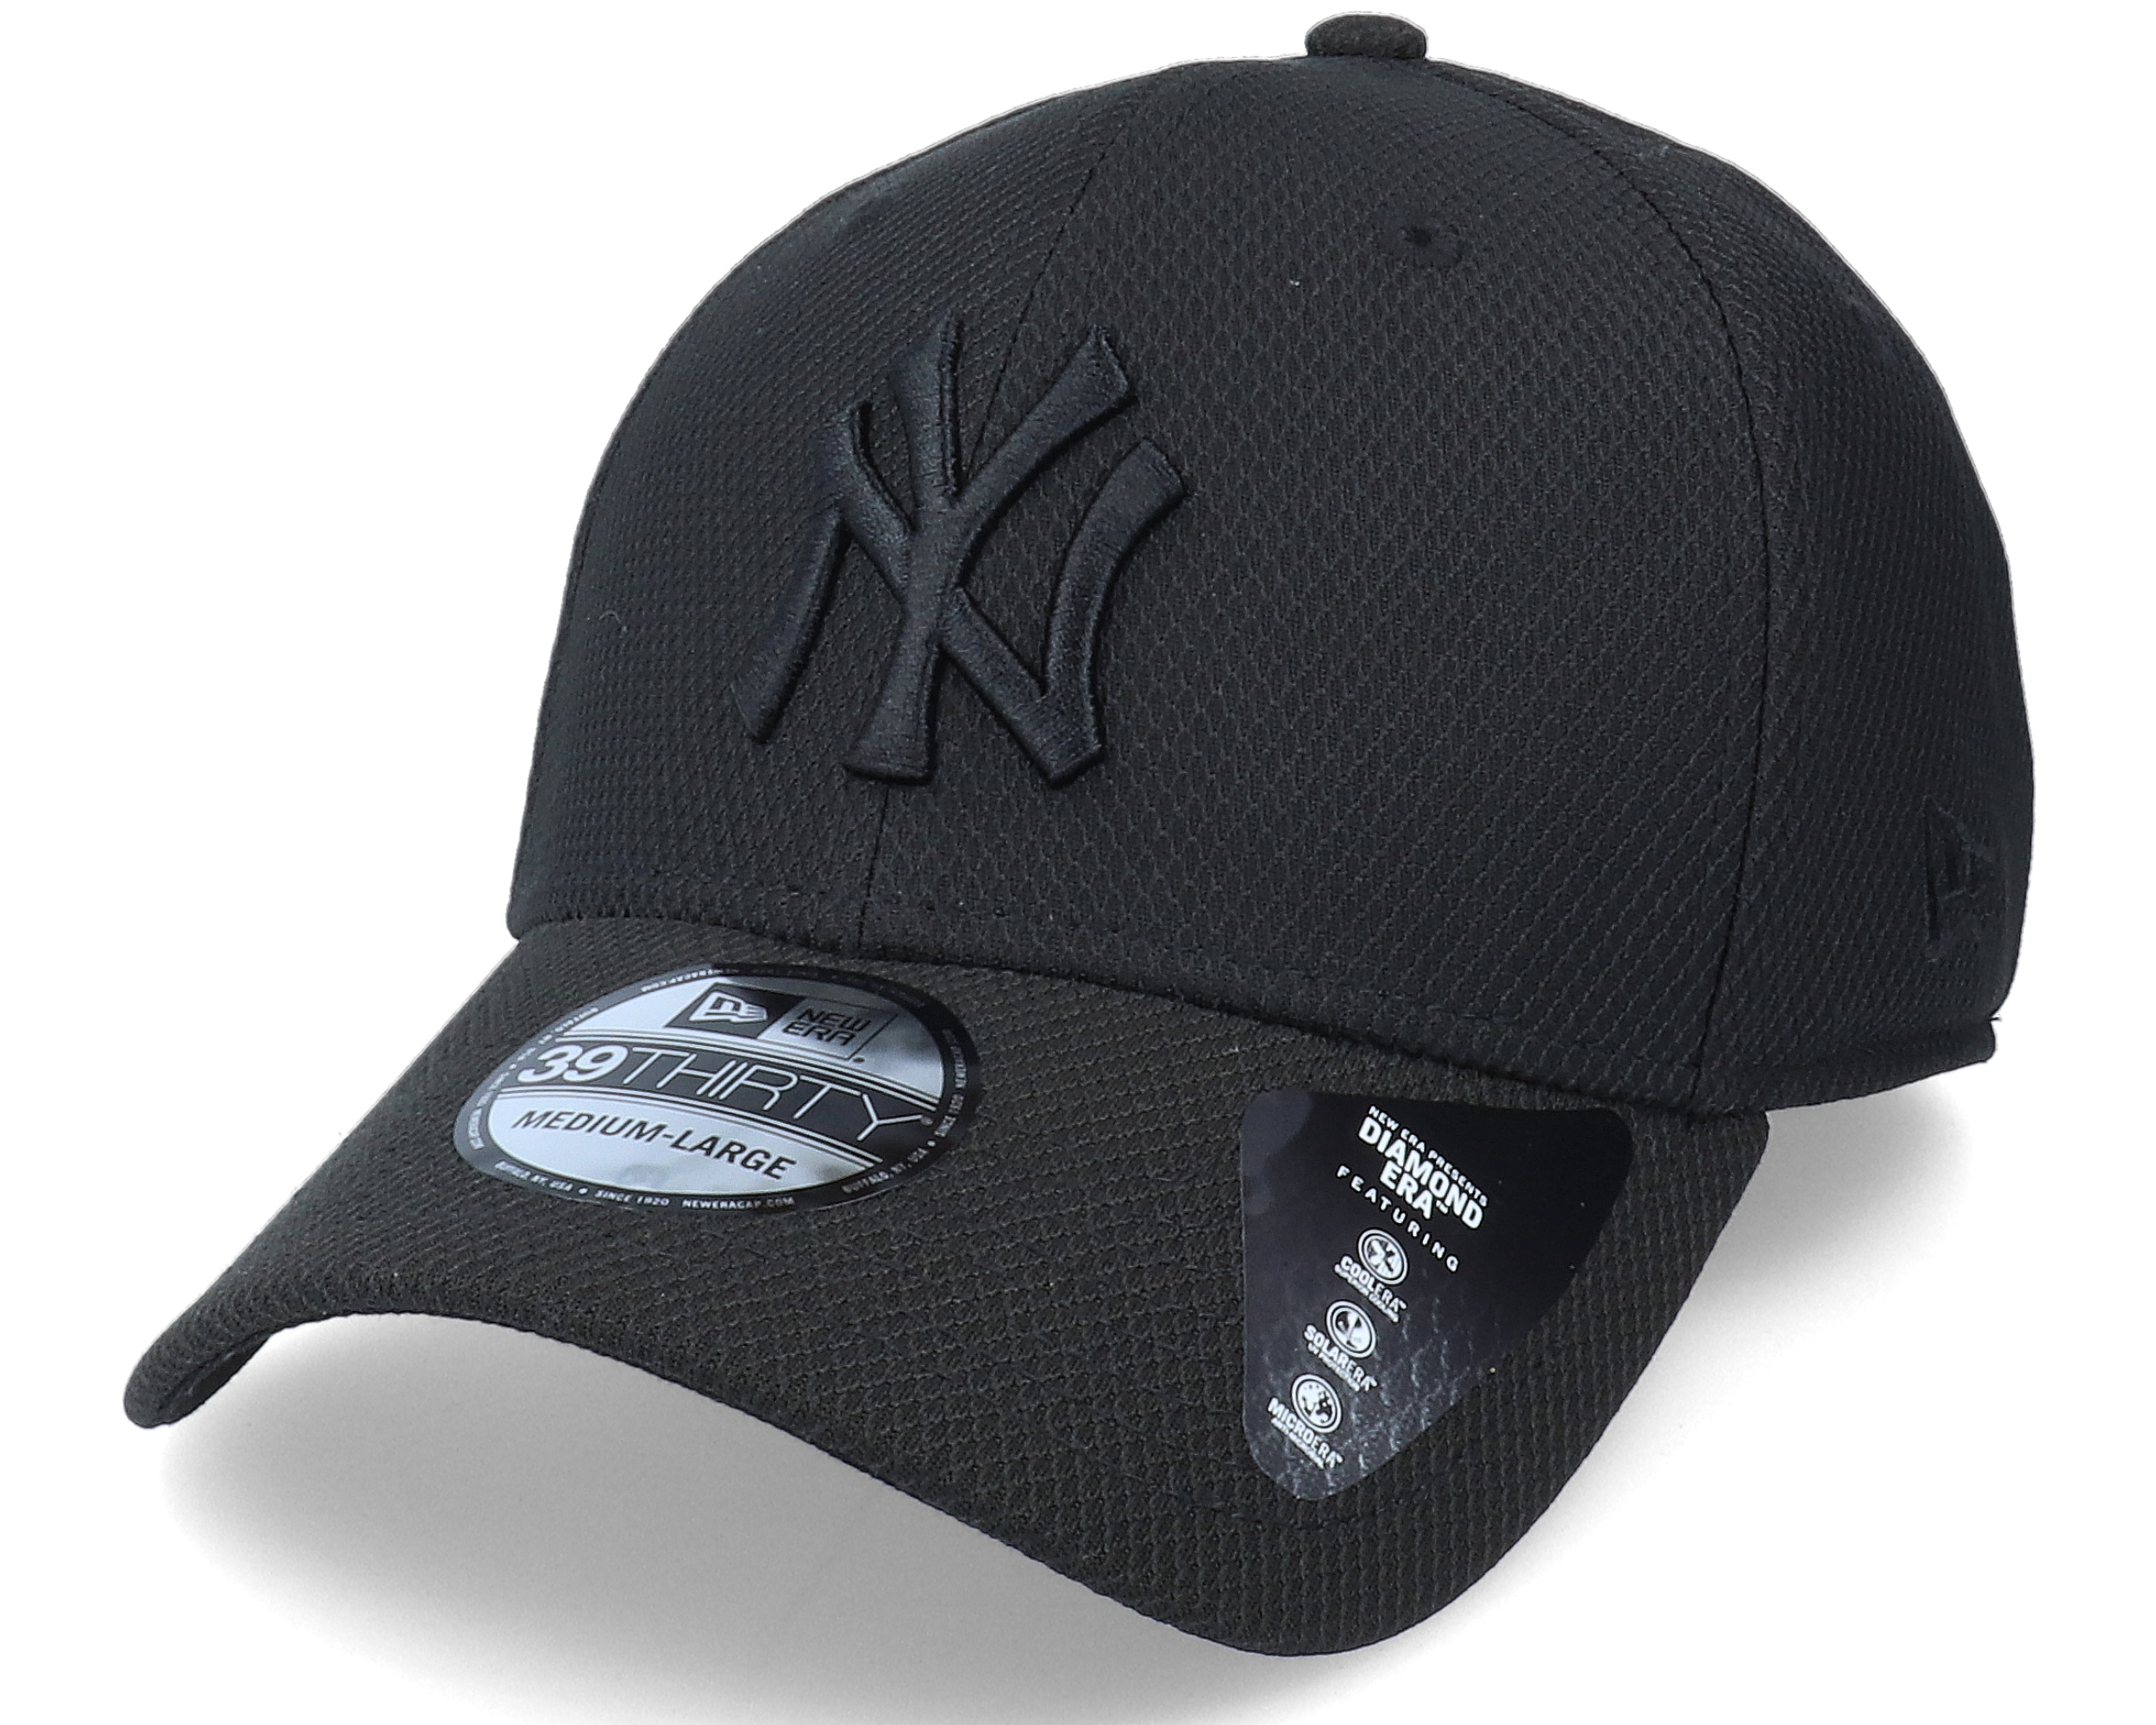 New York Yankees Diamond Era Black 39THIRTY Cap